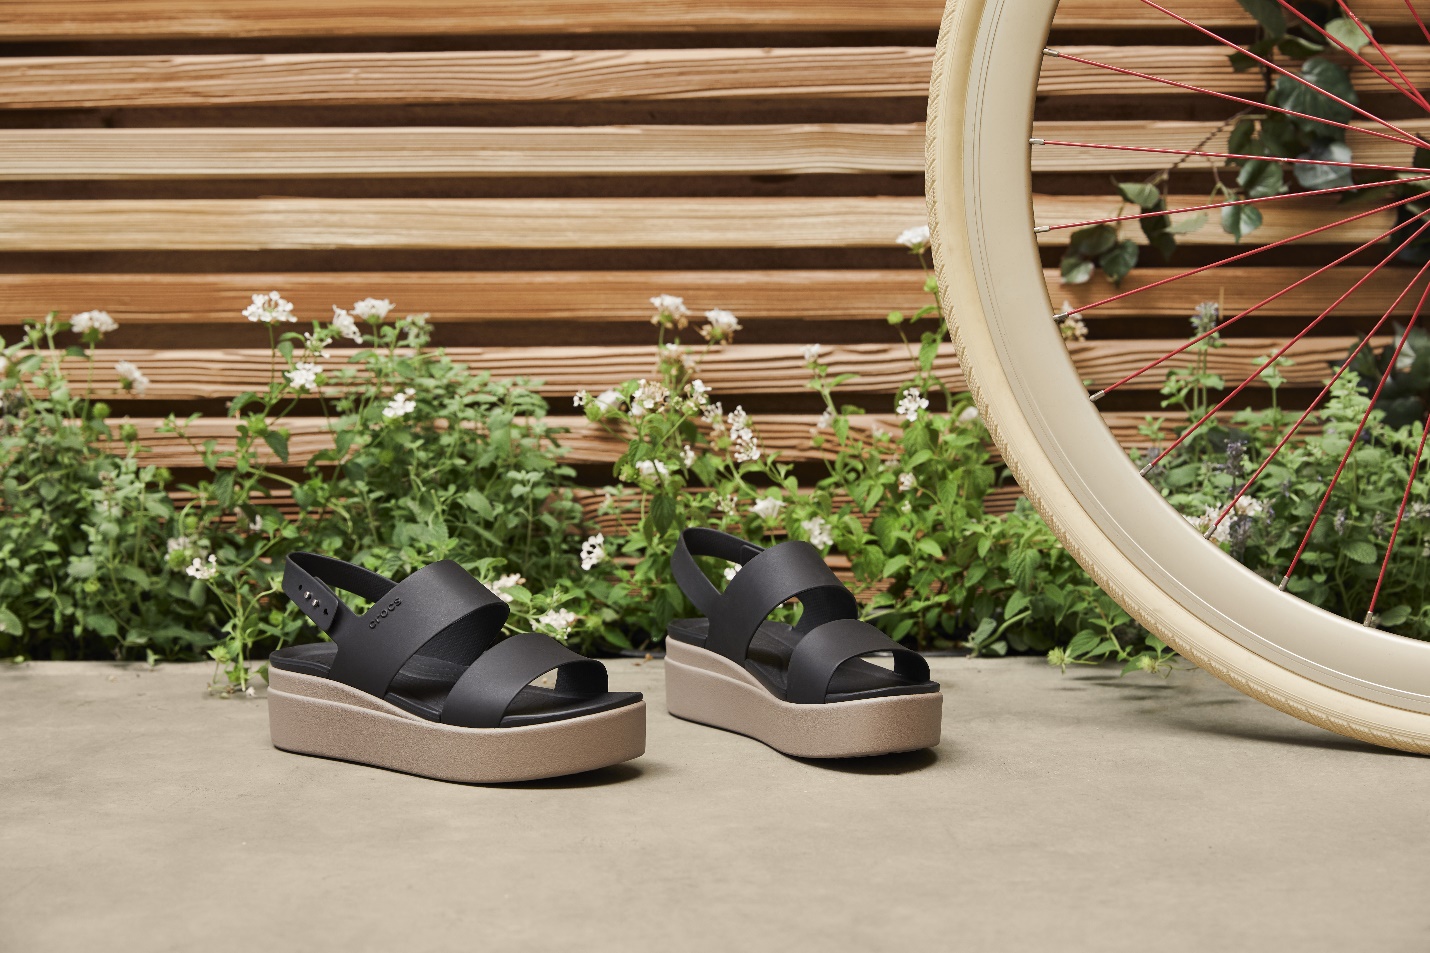 Một mẫu platform sandals màu đen trong BST Crocs Brooklyn phù hợp cho nhiều kiểu trang phục khác nhau